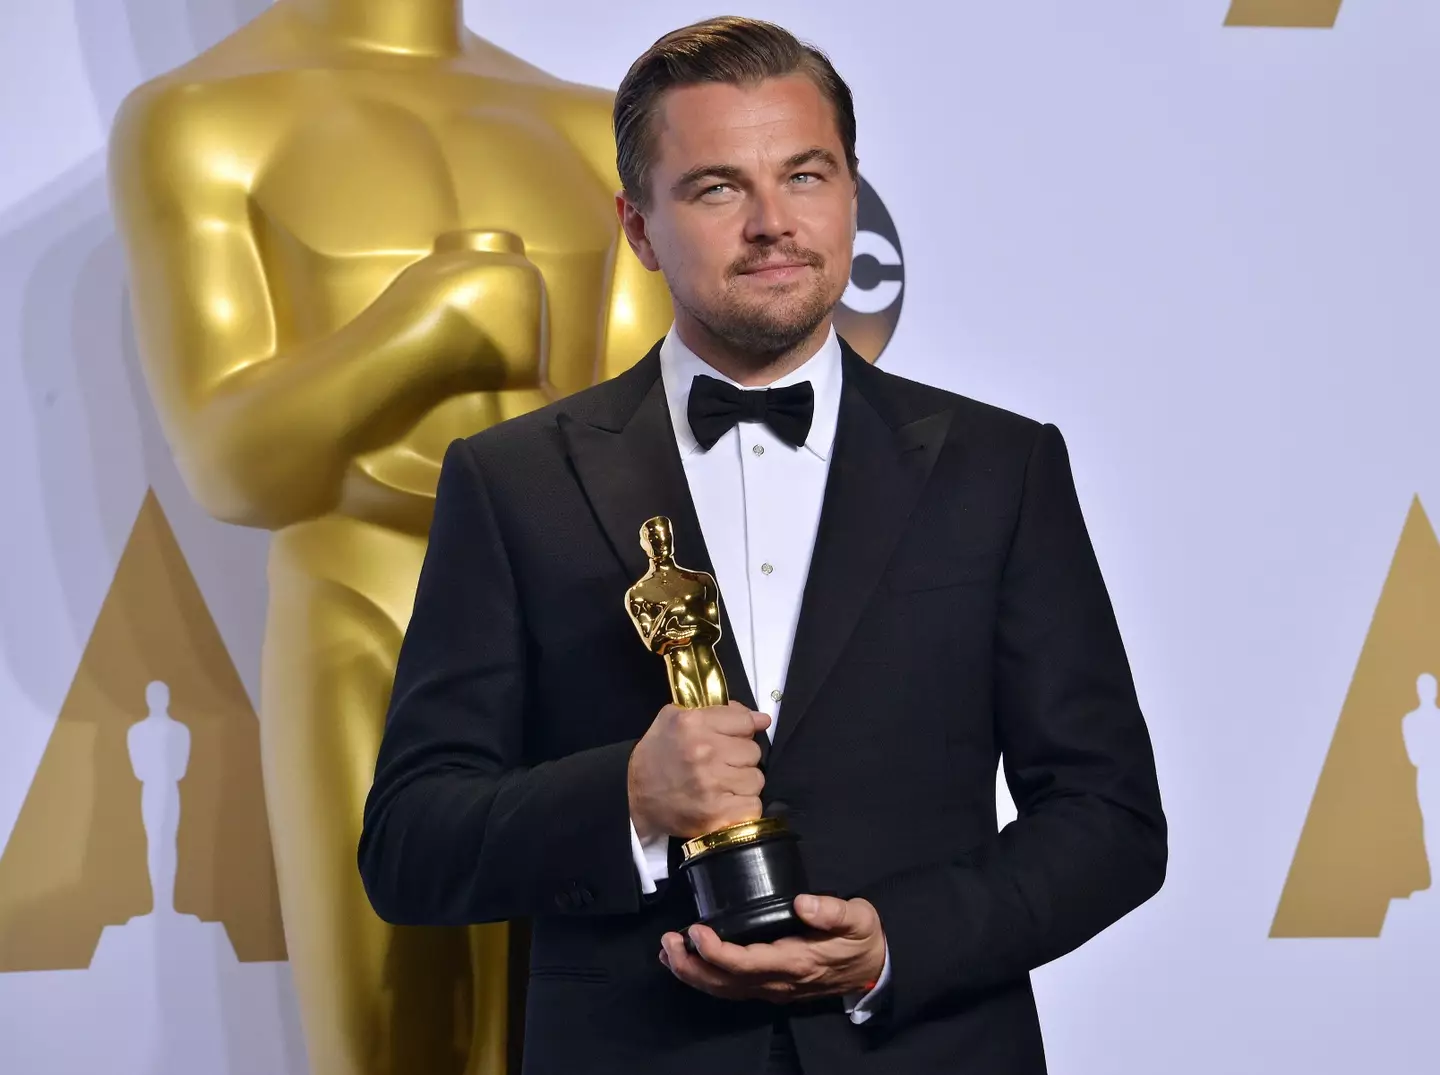 Leonardo won his Oscar in 2016 for The Revenant.